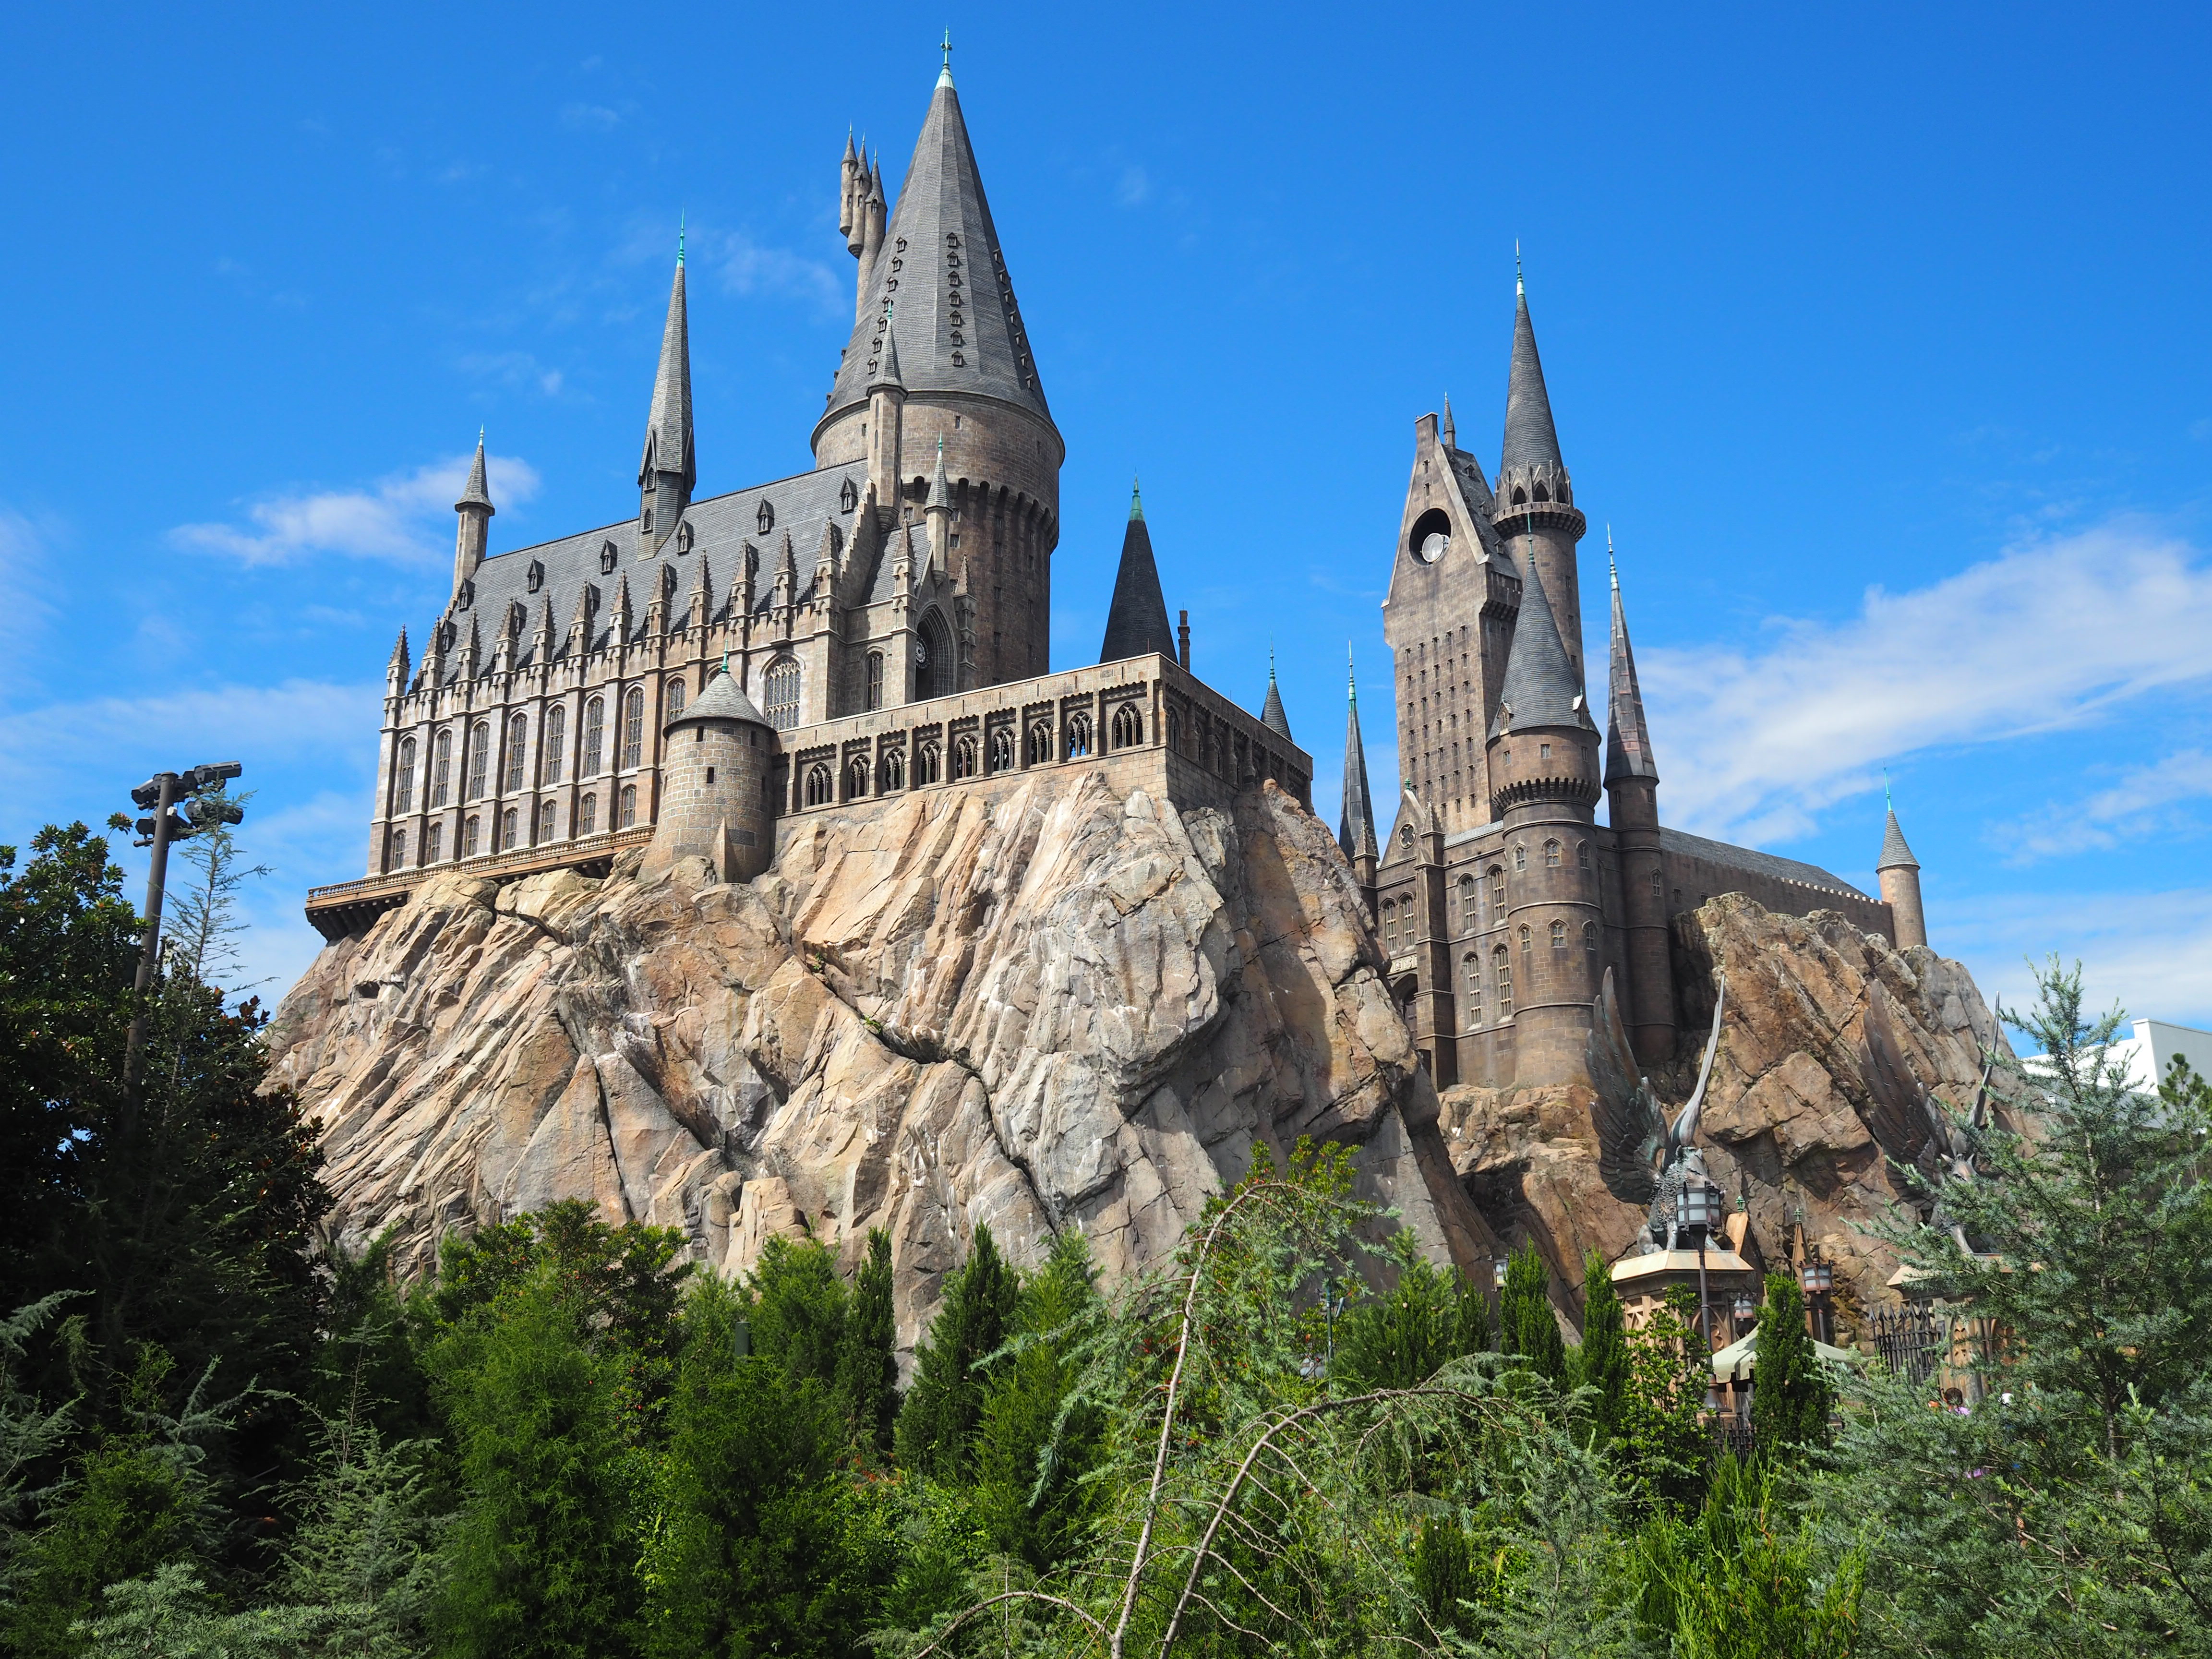 Visiter le parc Wizarding World of Harry Potter en une journée